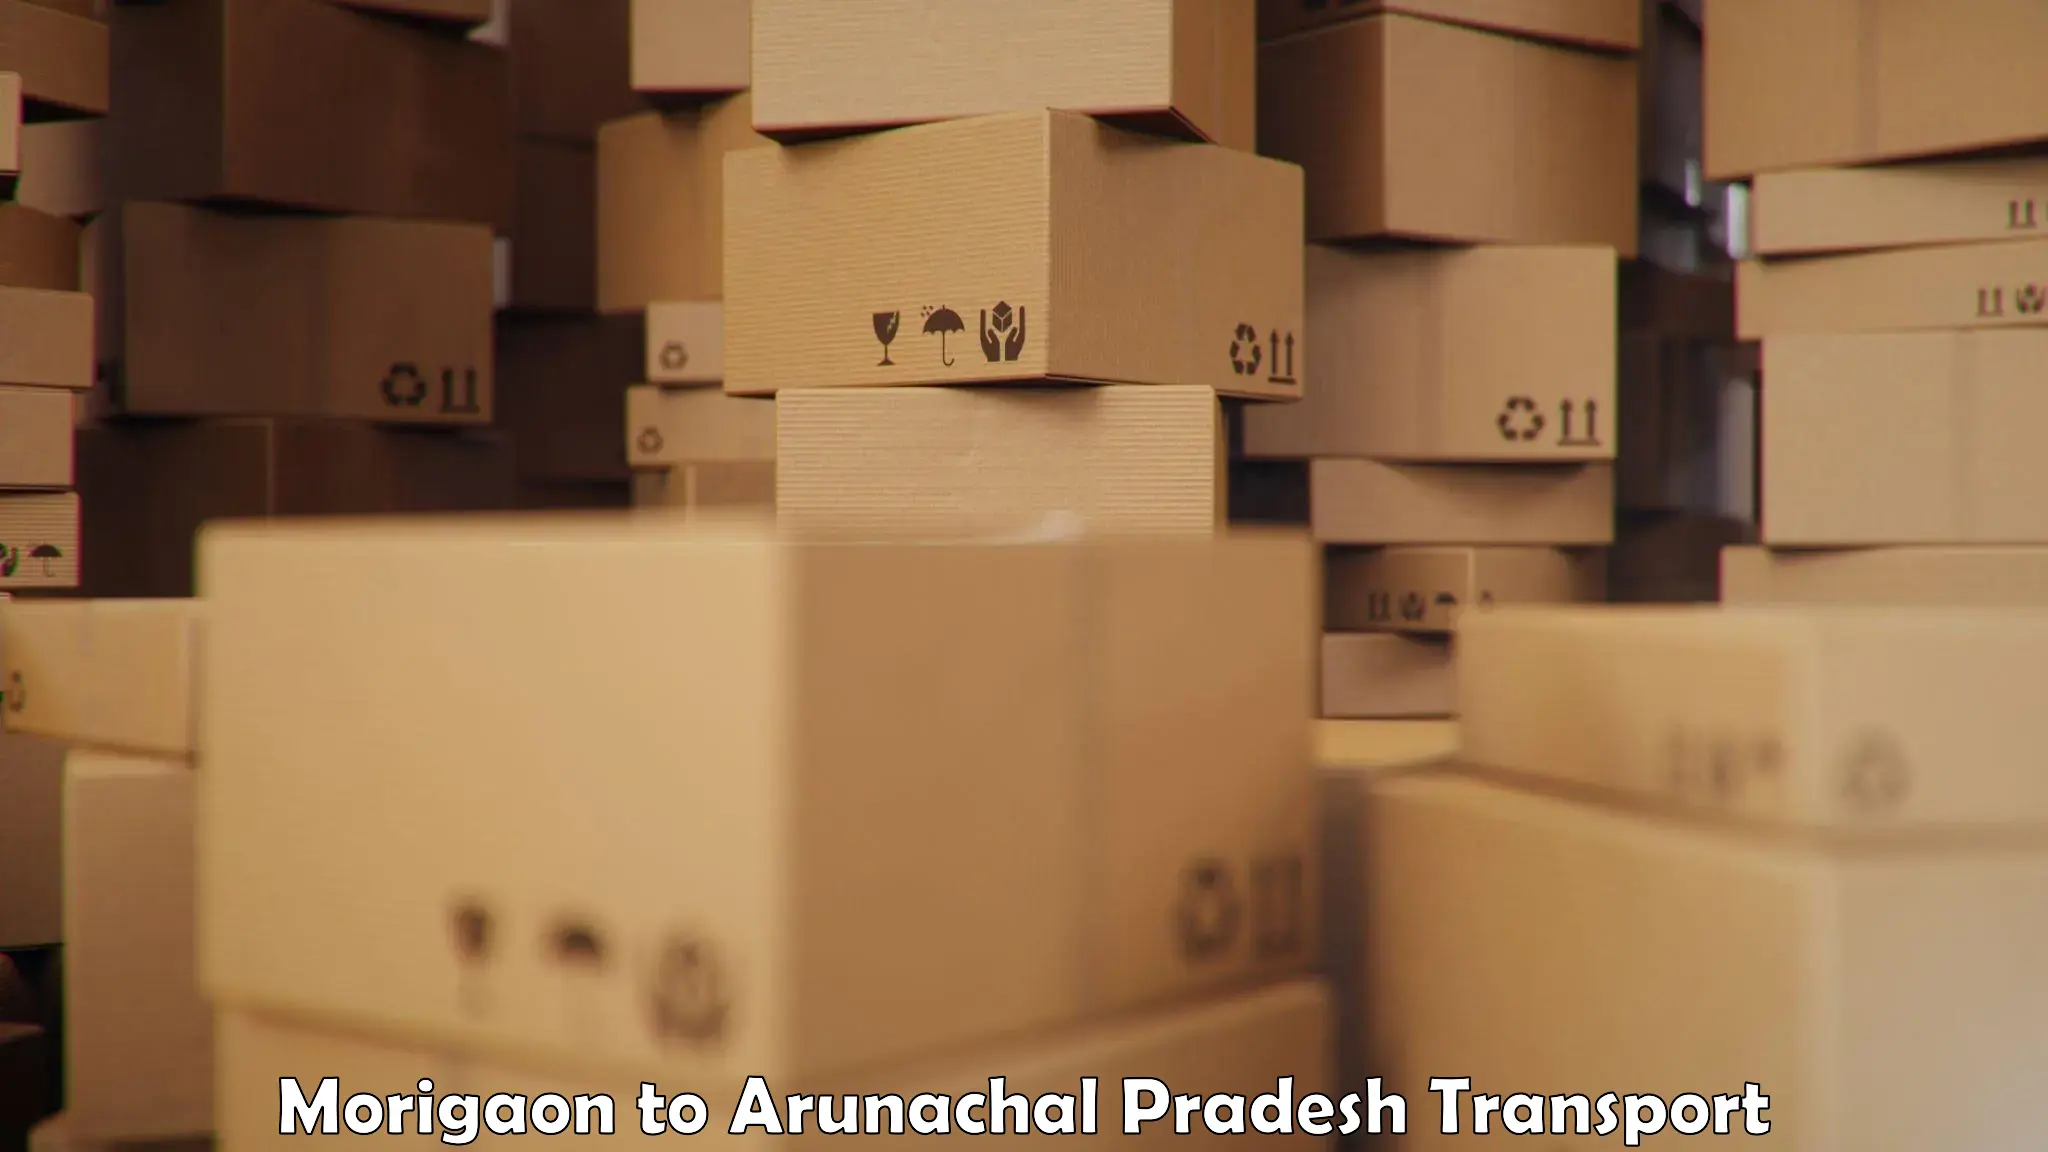 Delivery service Morigaon to Arunachal Pradesh